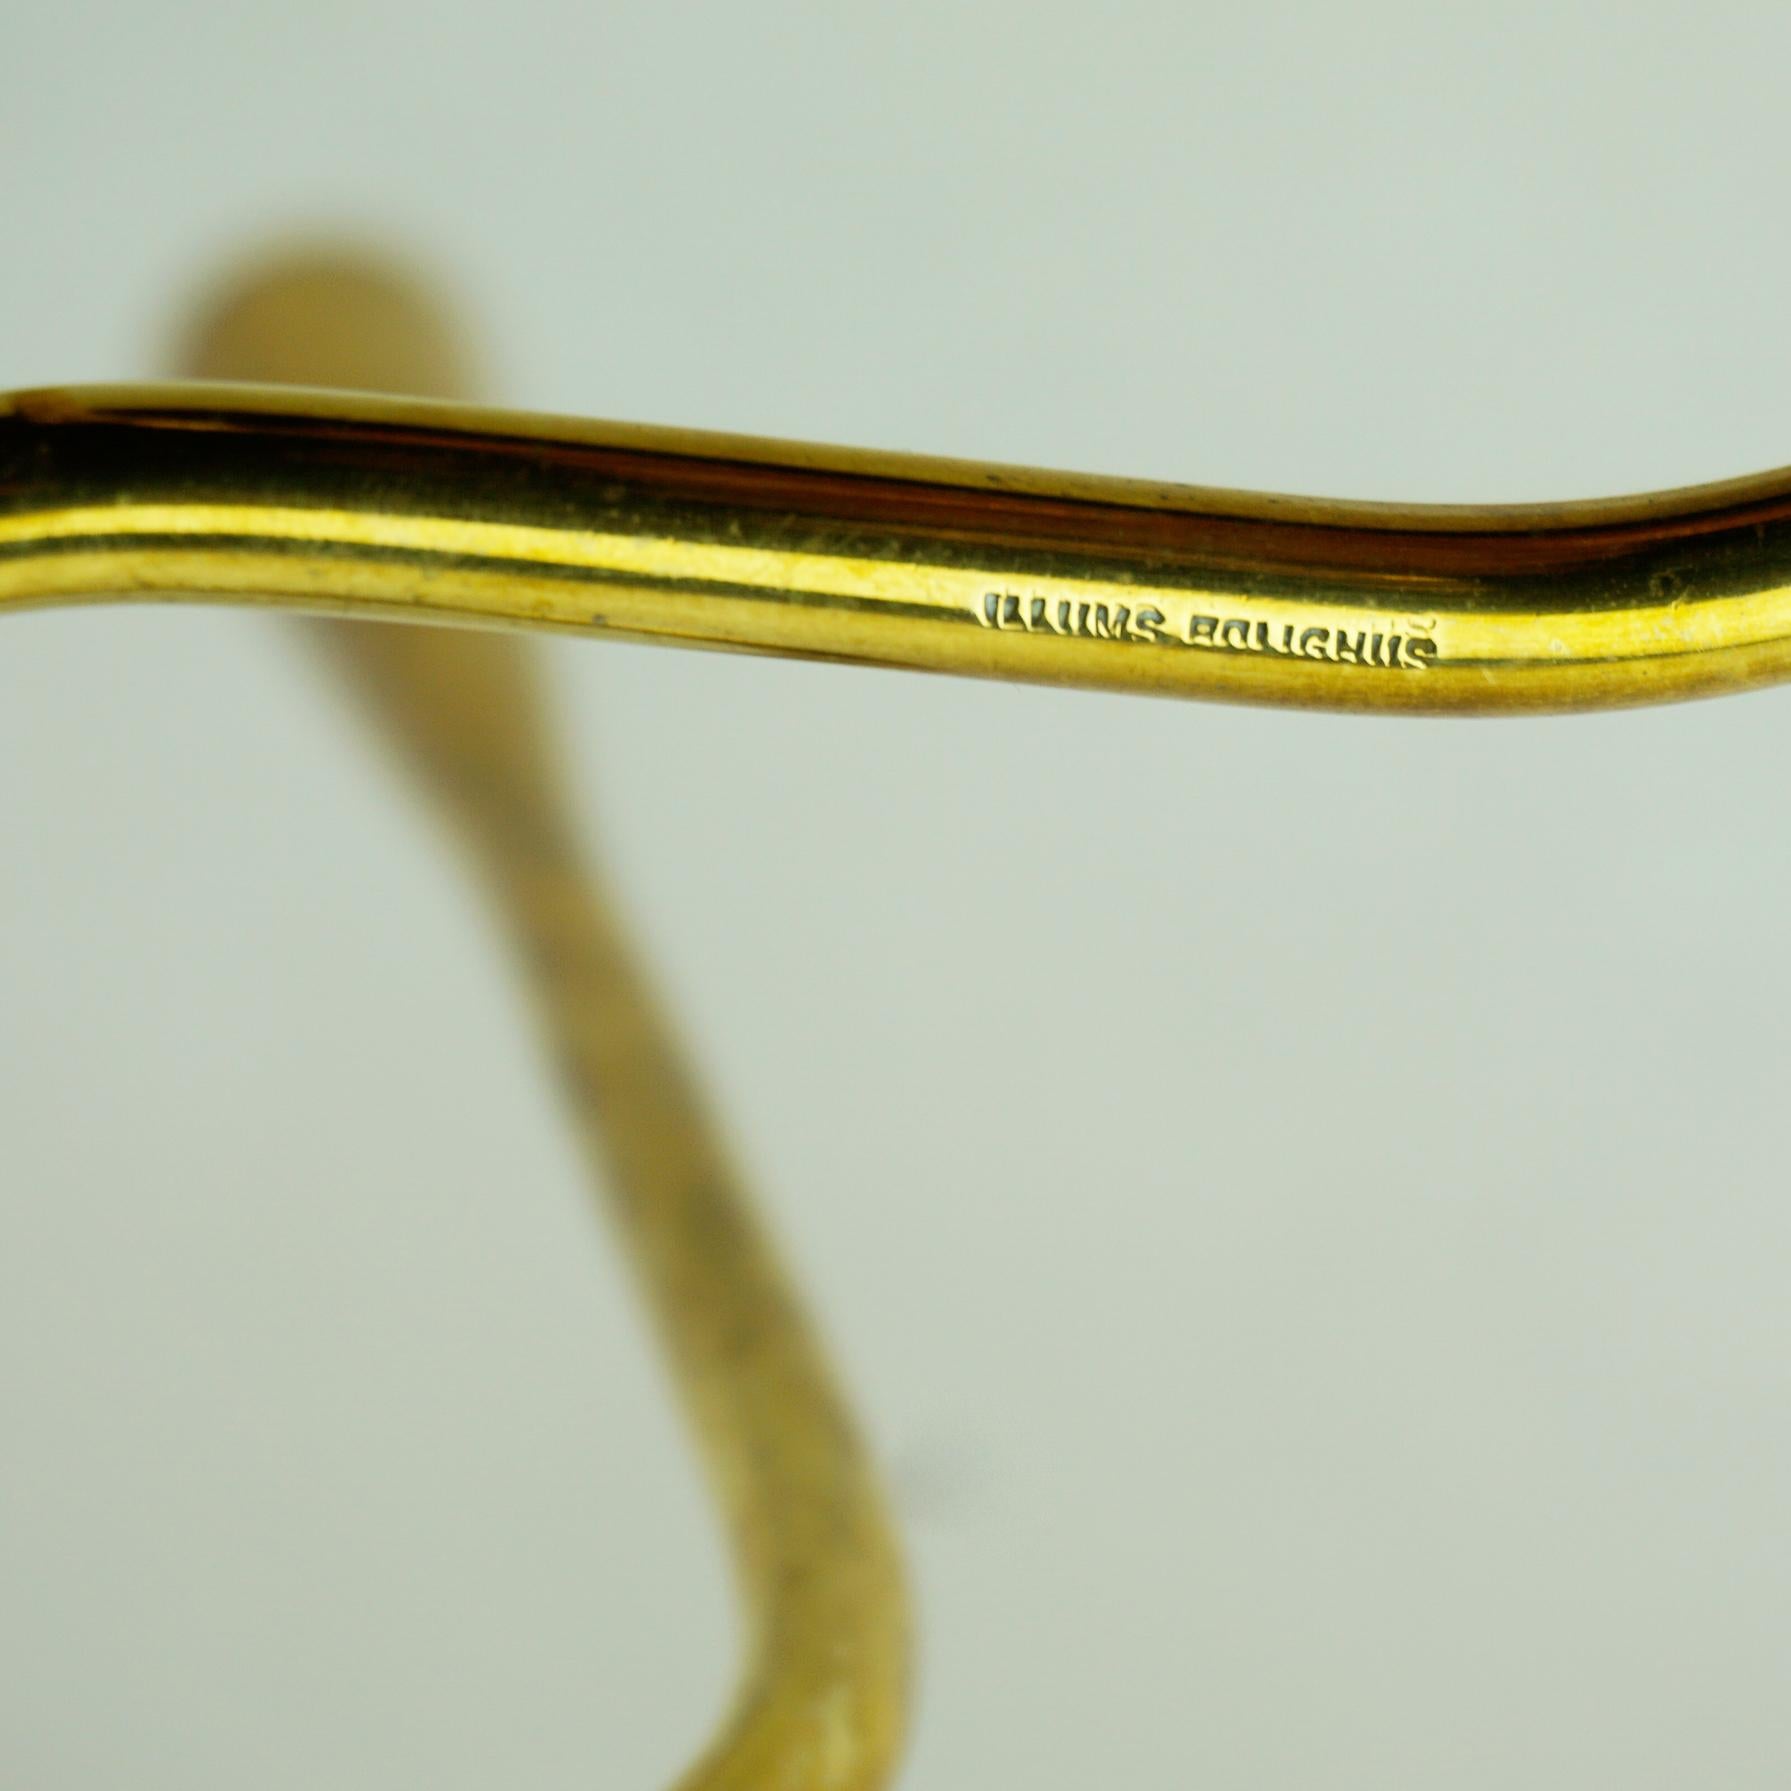 Scandinavian Brass Serpentine Candlestick for Illums Bolighus Denmark 4